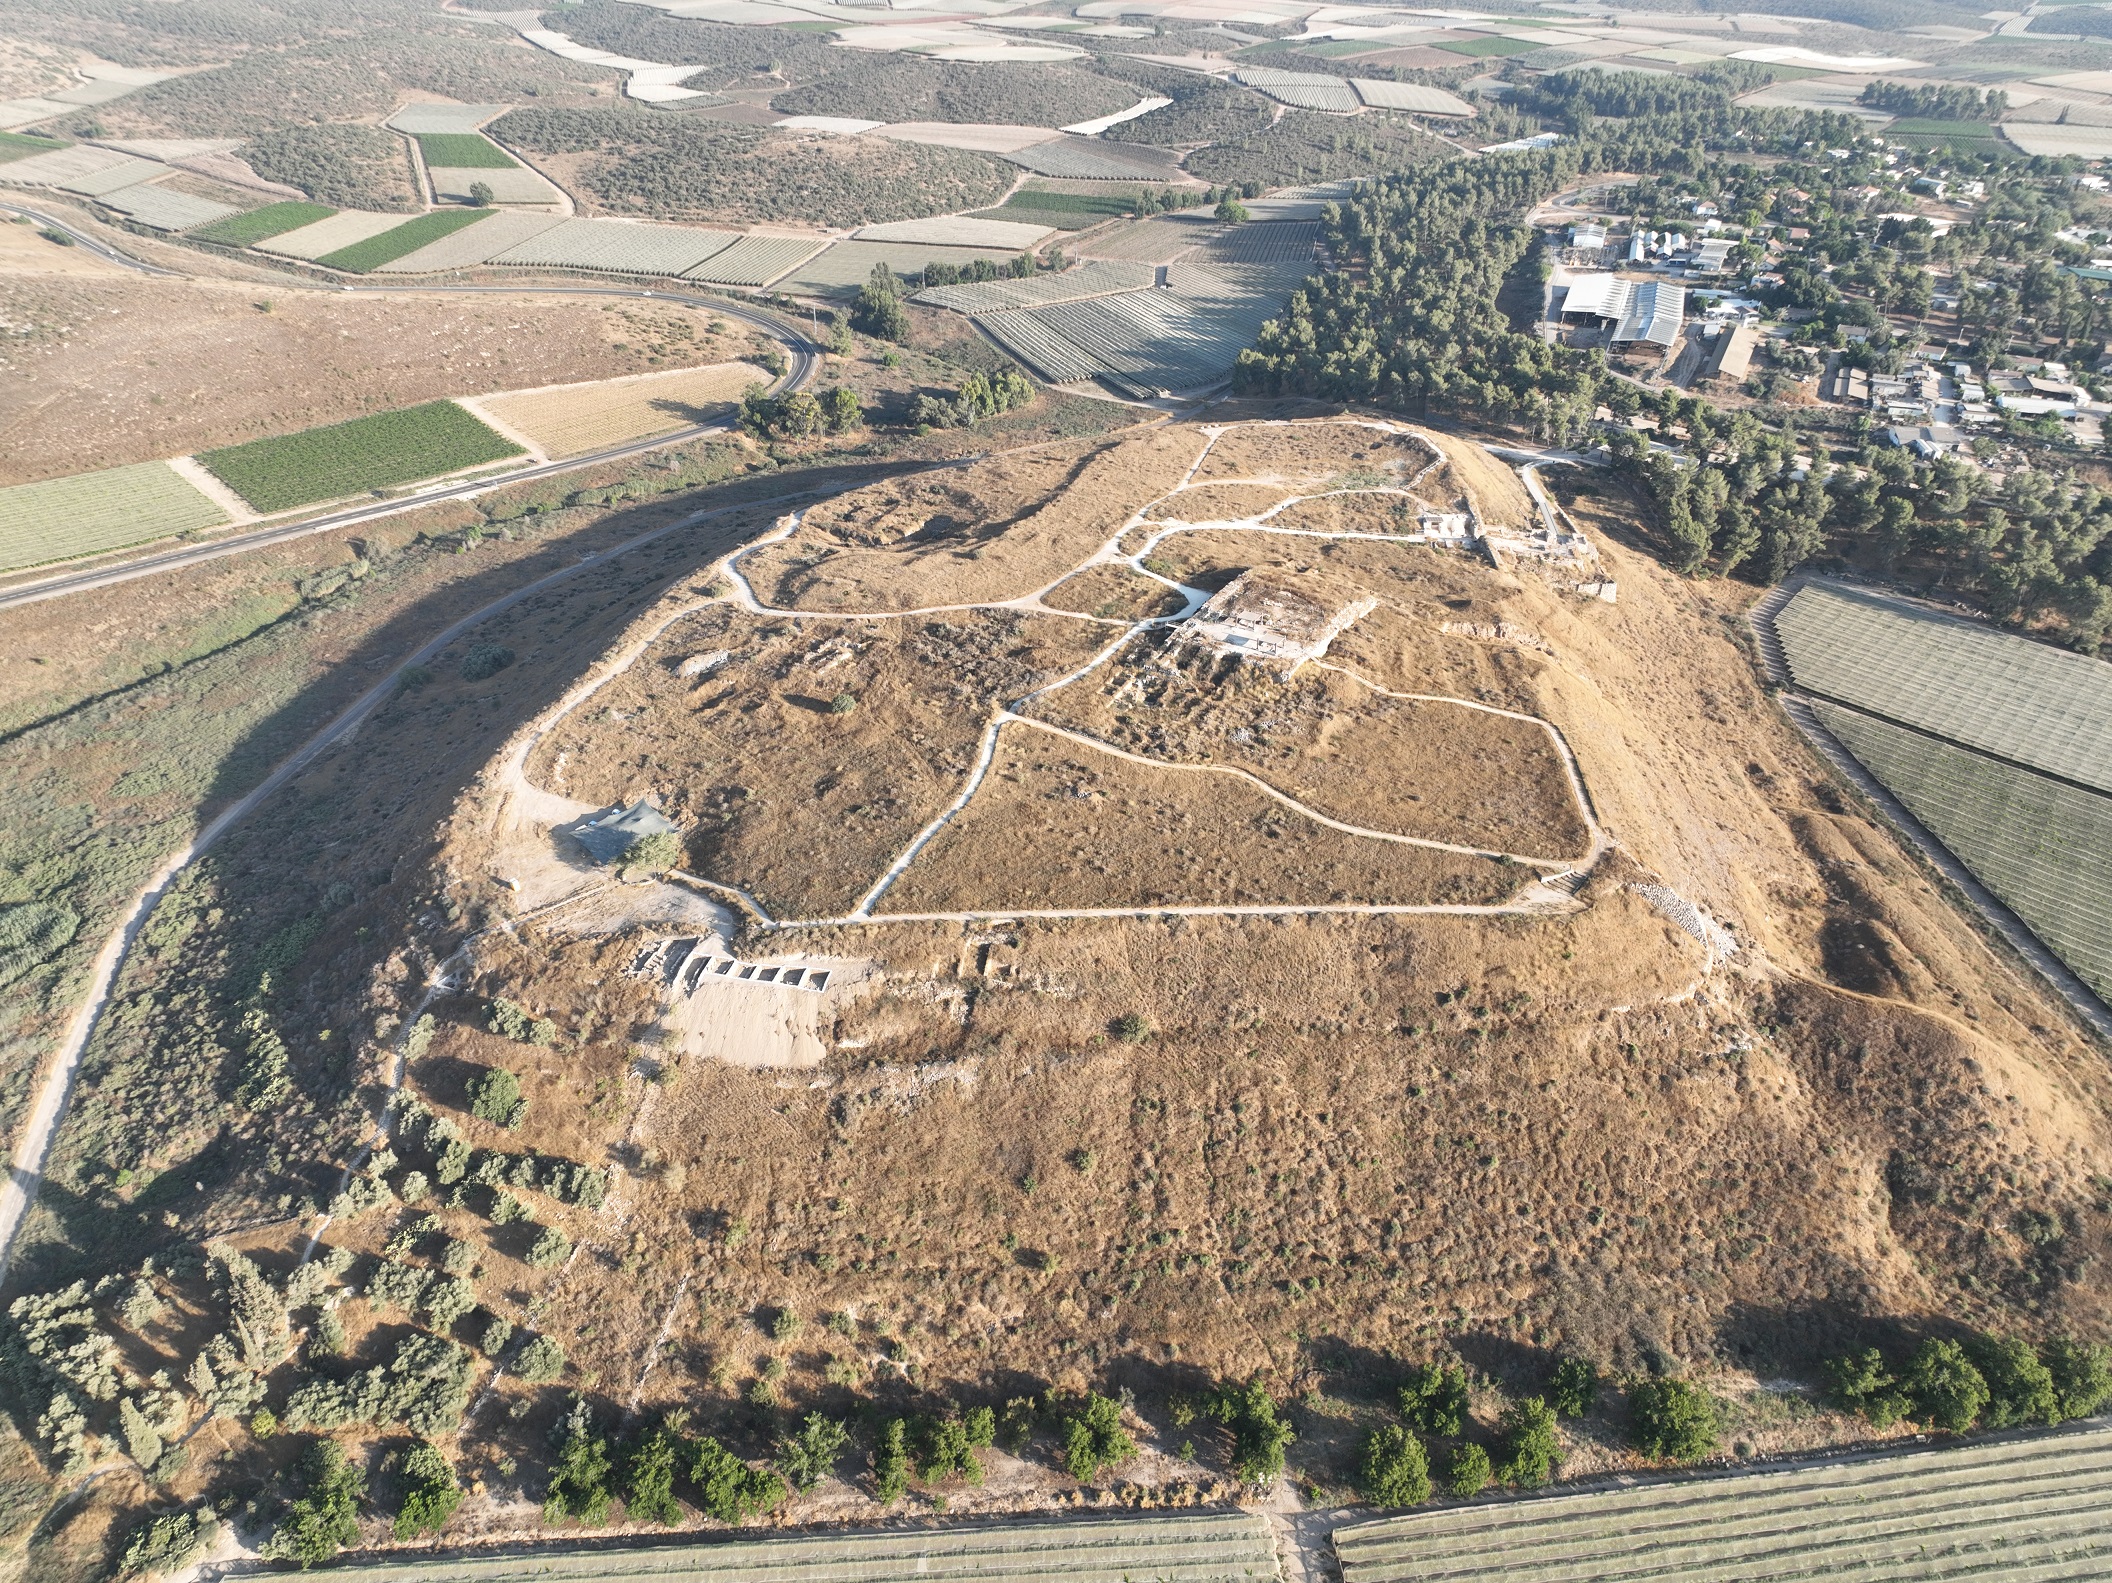 Southeast view of Tel Lachish